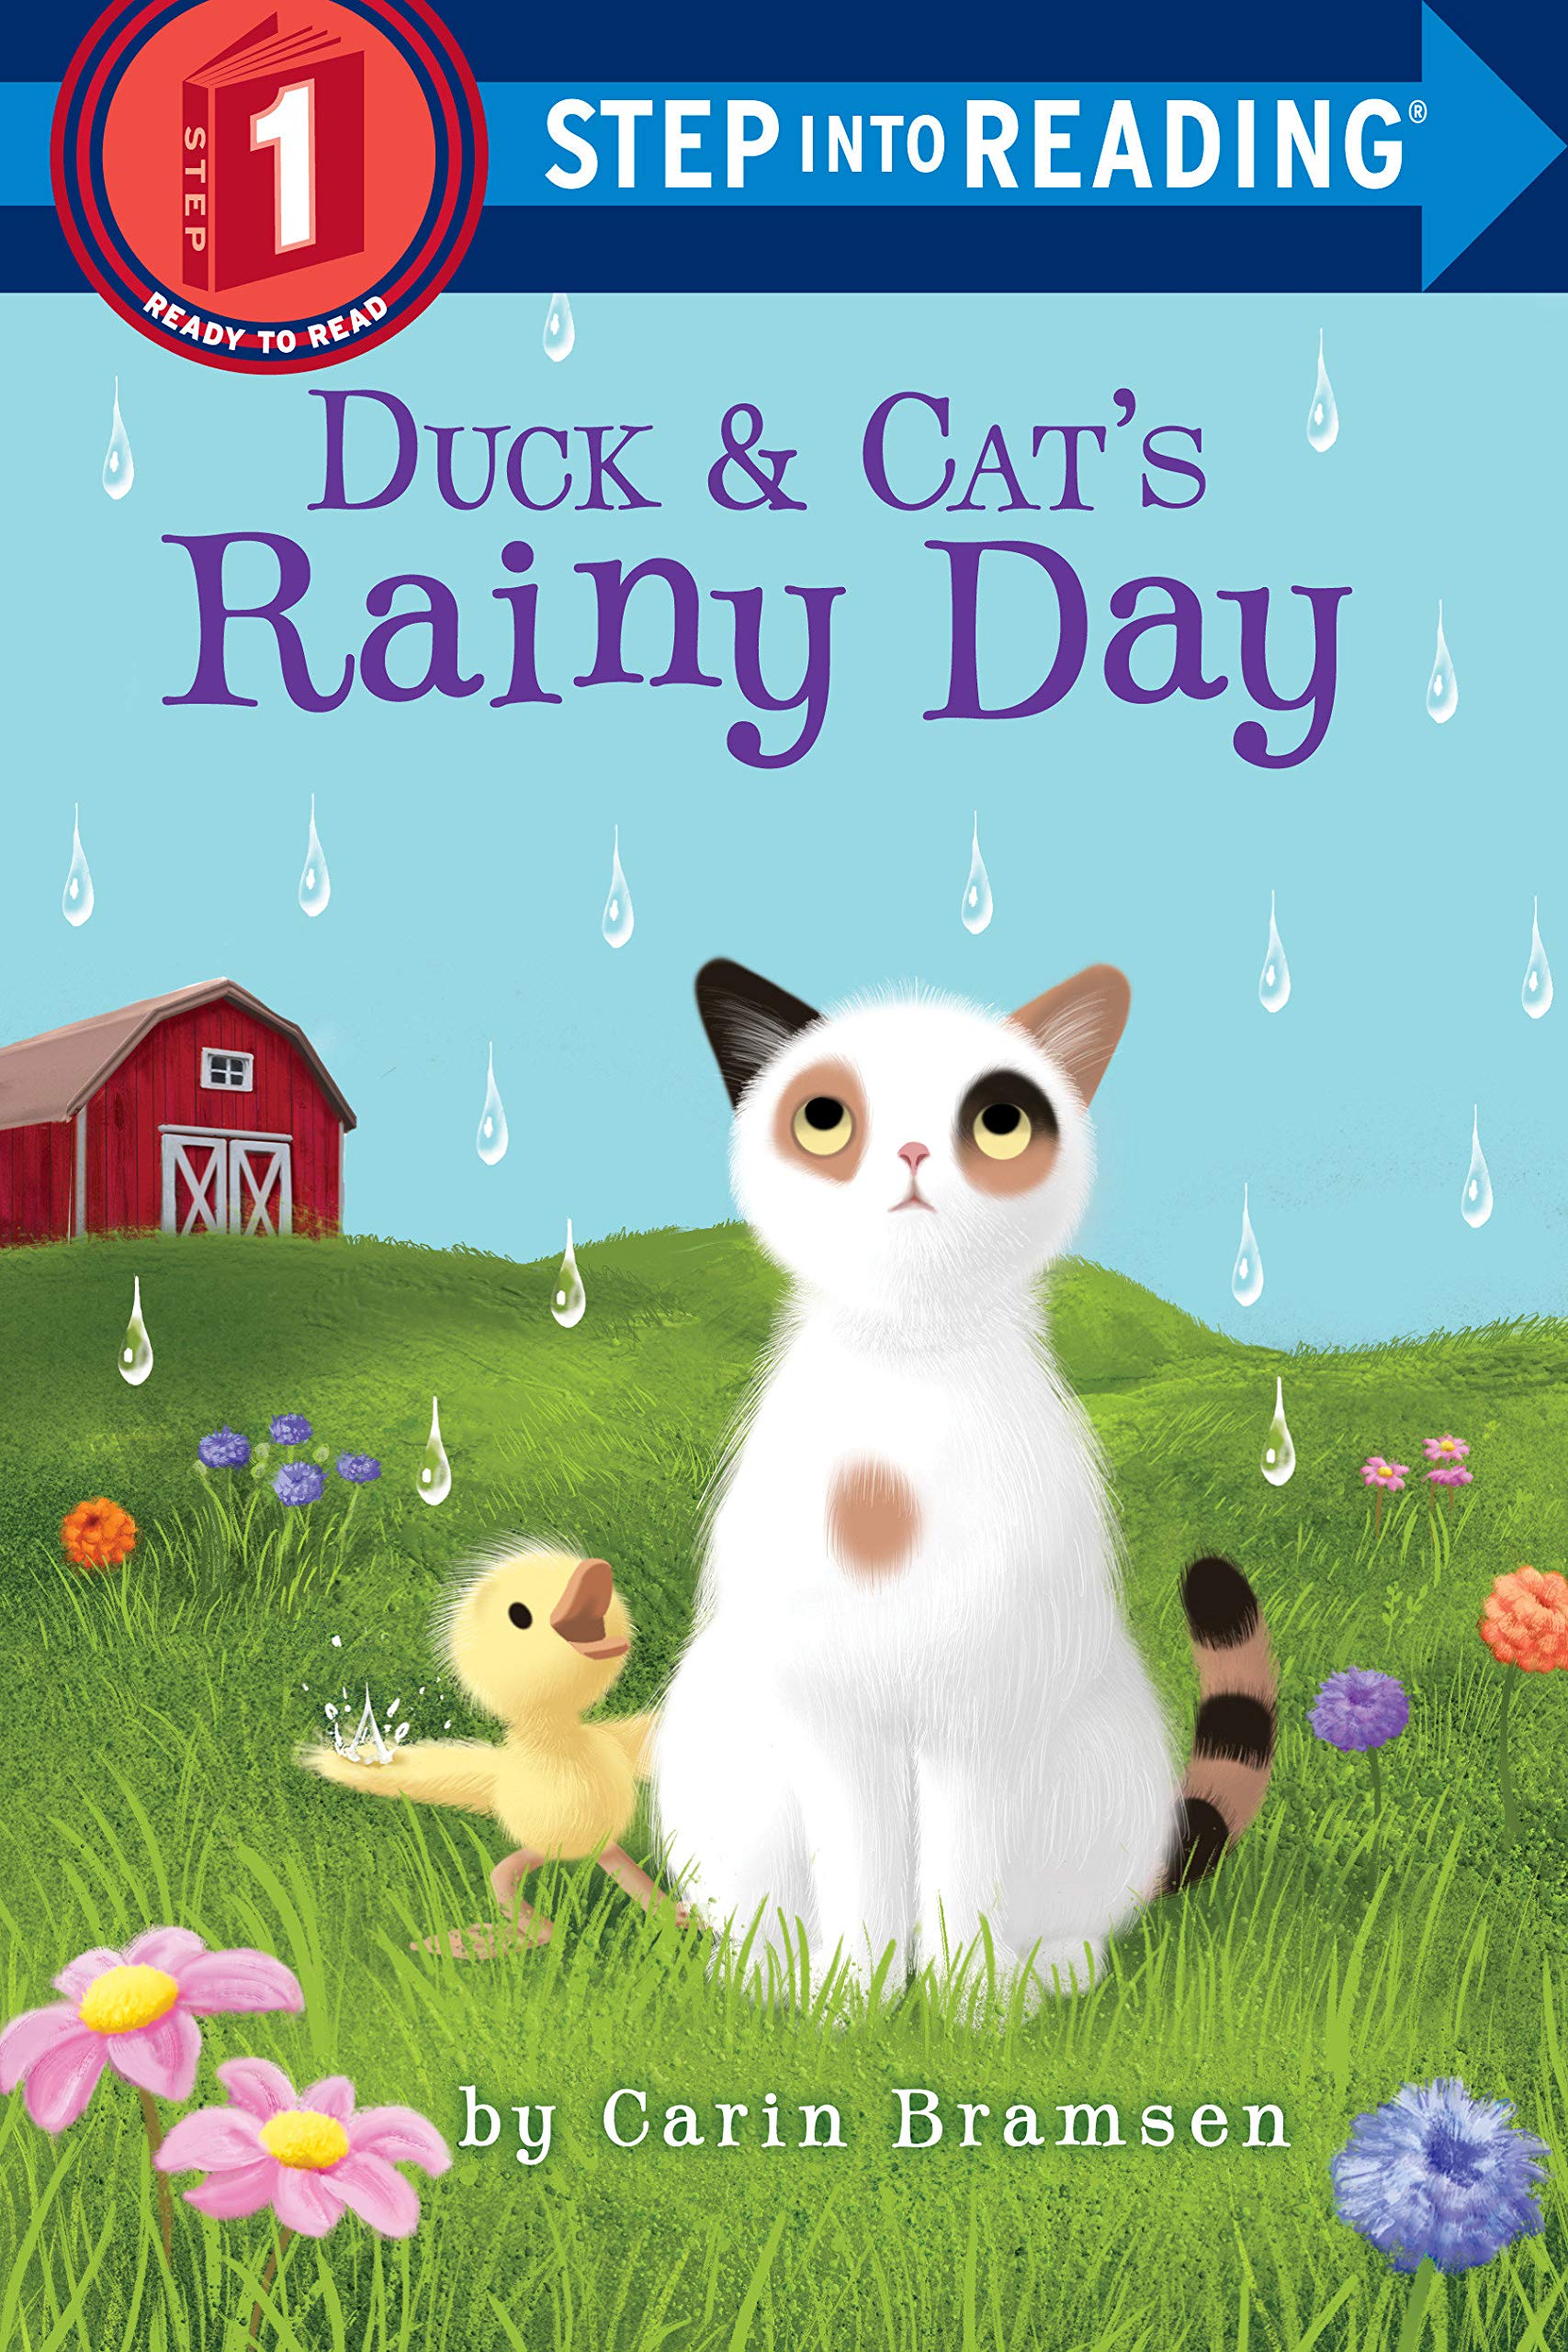 Duck & Cat’s Rainy Day